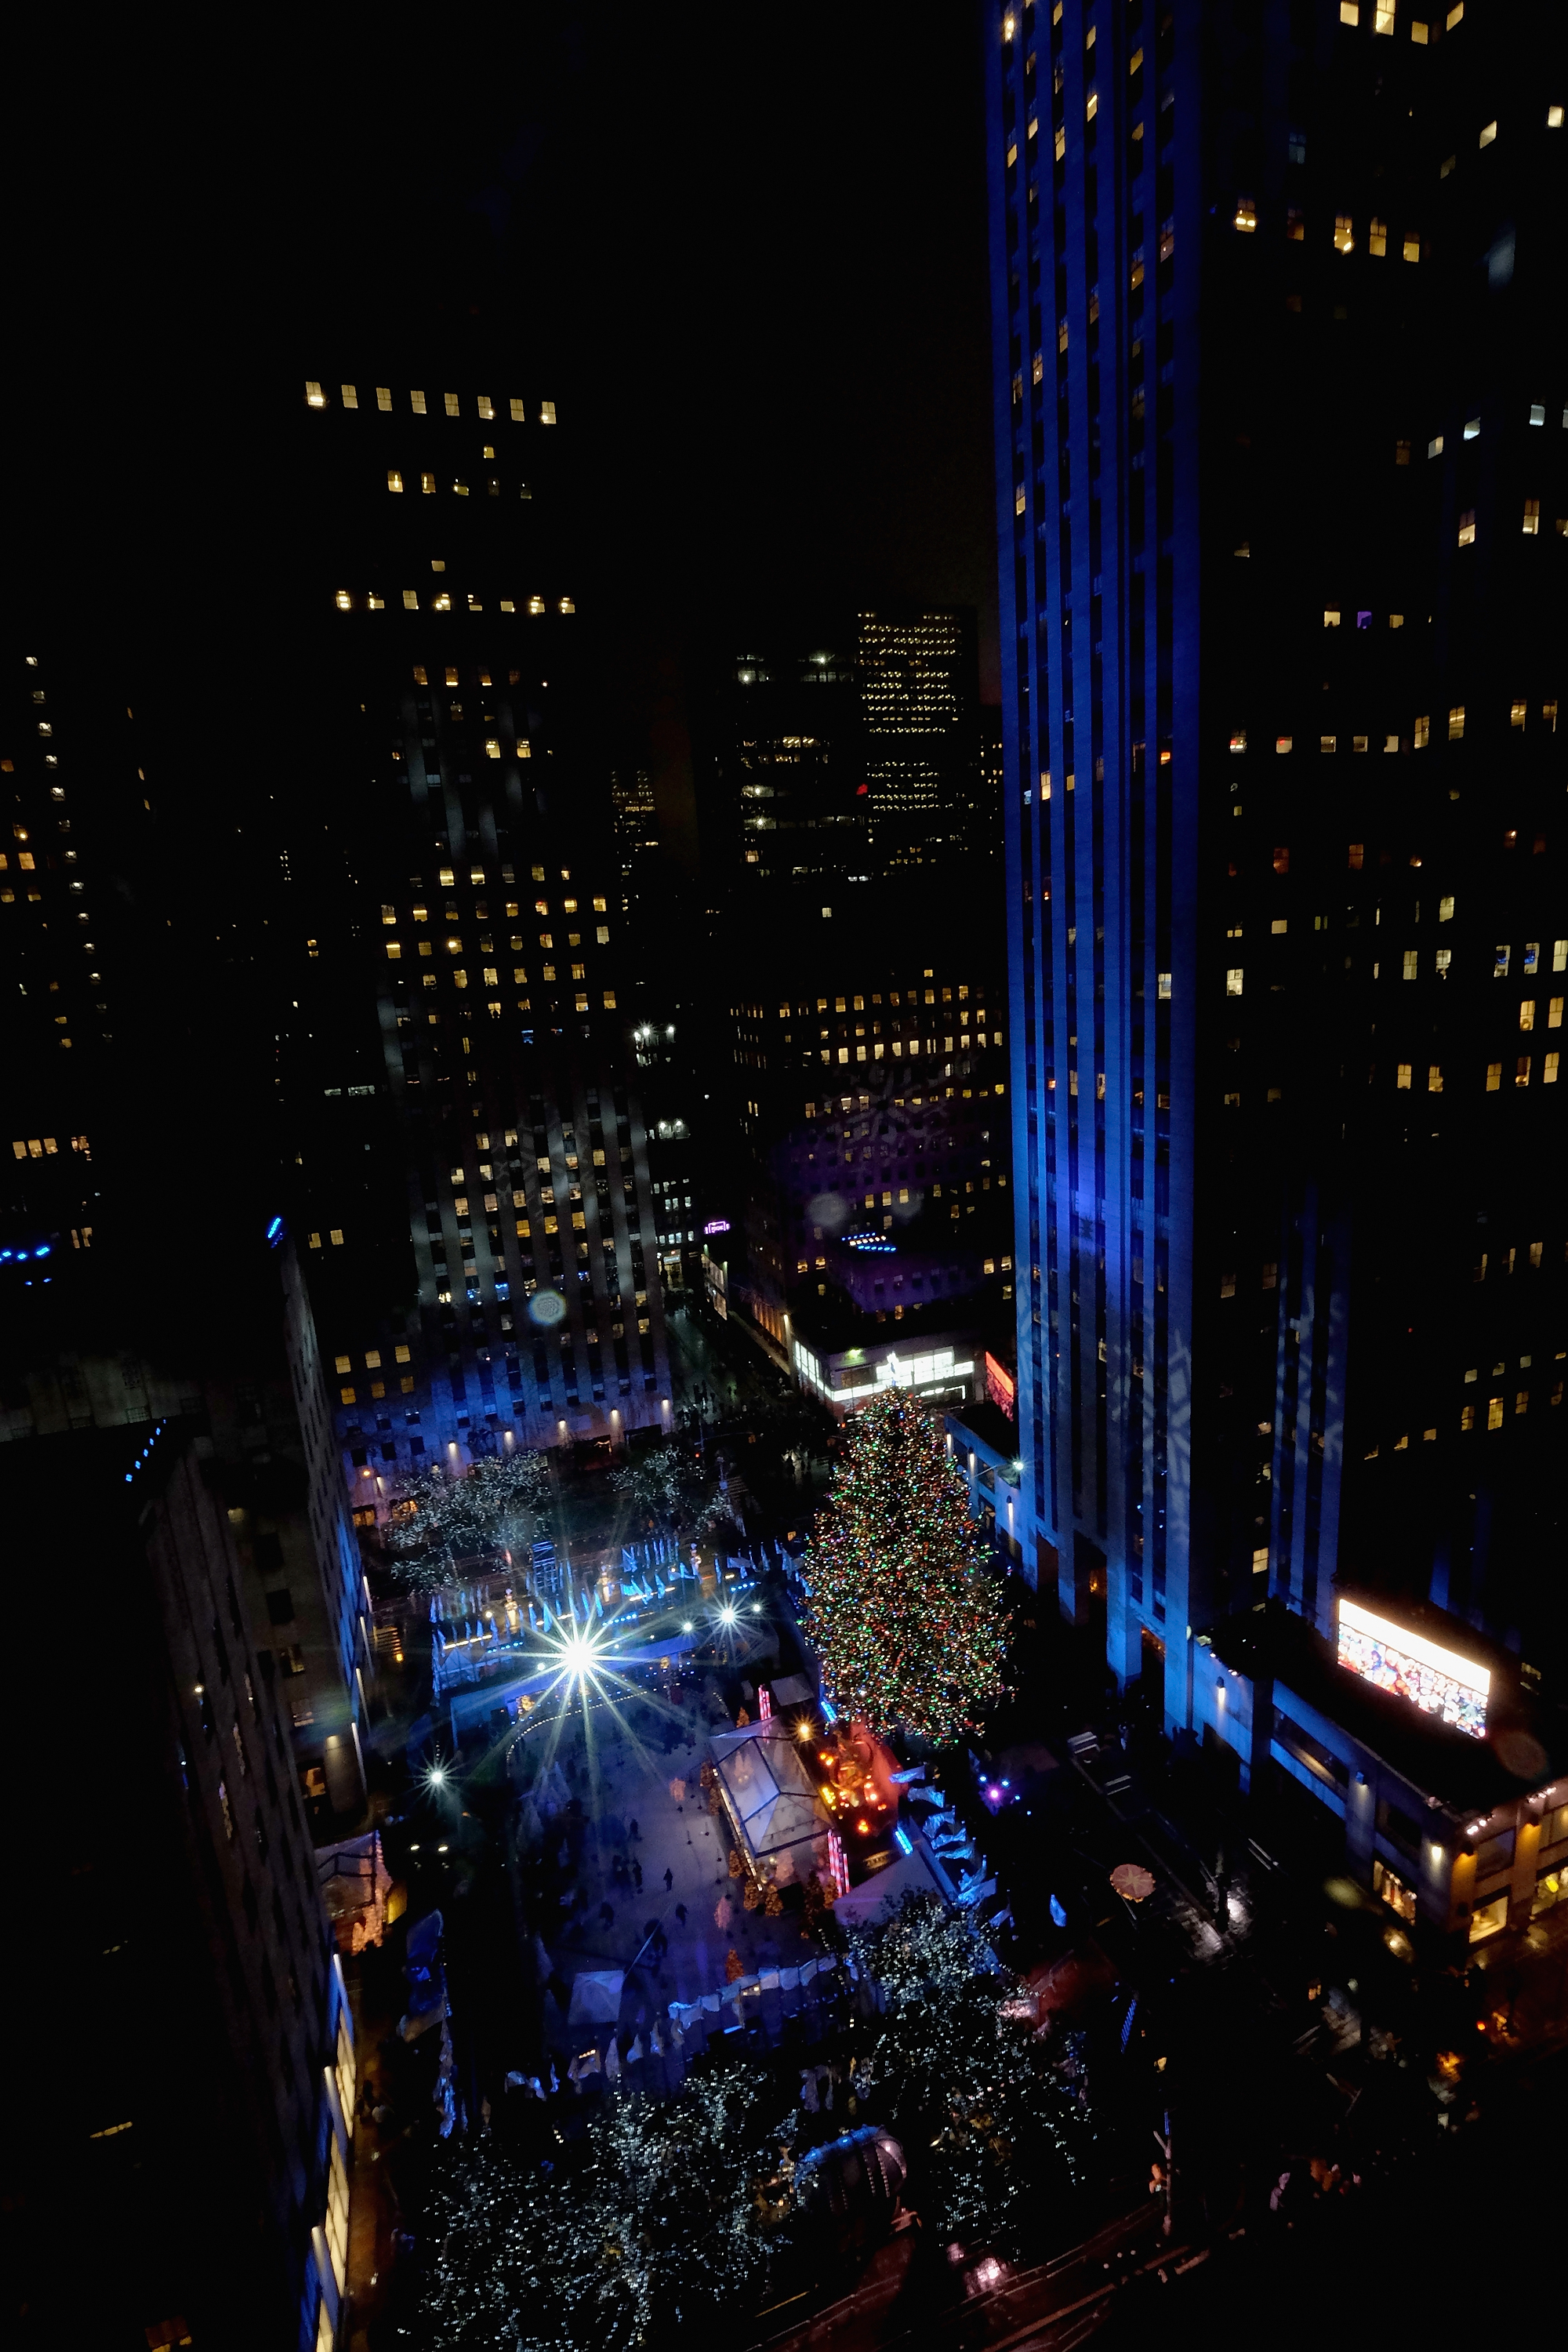 Хиляди хора се събраха въпреки дъжда в центъра на Ню Йорк, за да присъстват на традиционното запалване на светлините на коледното дърво пред Рокфелeр сентър, съобщи Асошиейтед прес. <br />
Преди да грейнат 50-те хиляди разноцветни лампички, украсили 29 метрото дърво, се състоя концерт с участието на Нийл Даймънд, Сара Маклоклън, Тори Кели и танцьорките от Рейдио Сити Рокетс. <br />
На върха на 14-тонния норвежки смърч, докаран от северните склонове на Катскилските планини в щата Ню Йорк, свети гигантска звезда, украсена с кристали Сваровски. След 7 януари дървото ще бъде преработено и използвано за строителството на къщи за социално слаби.